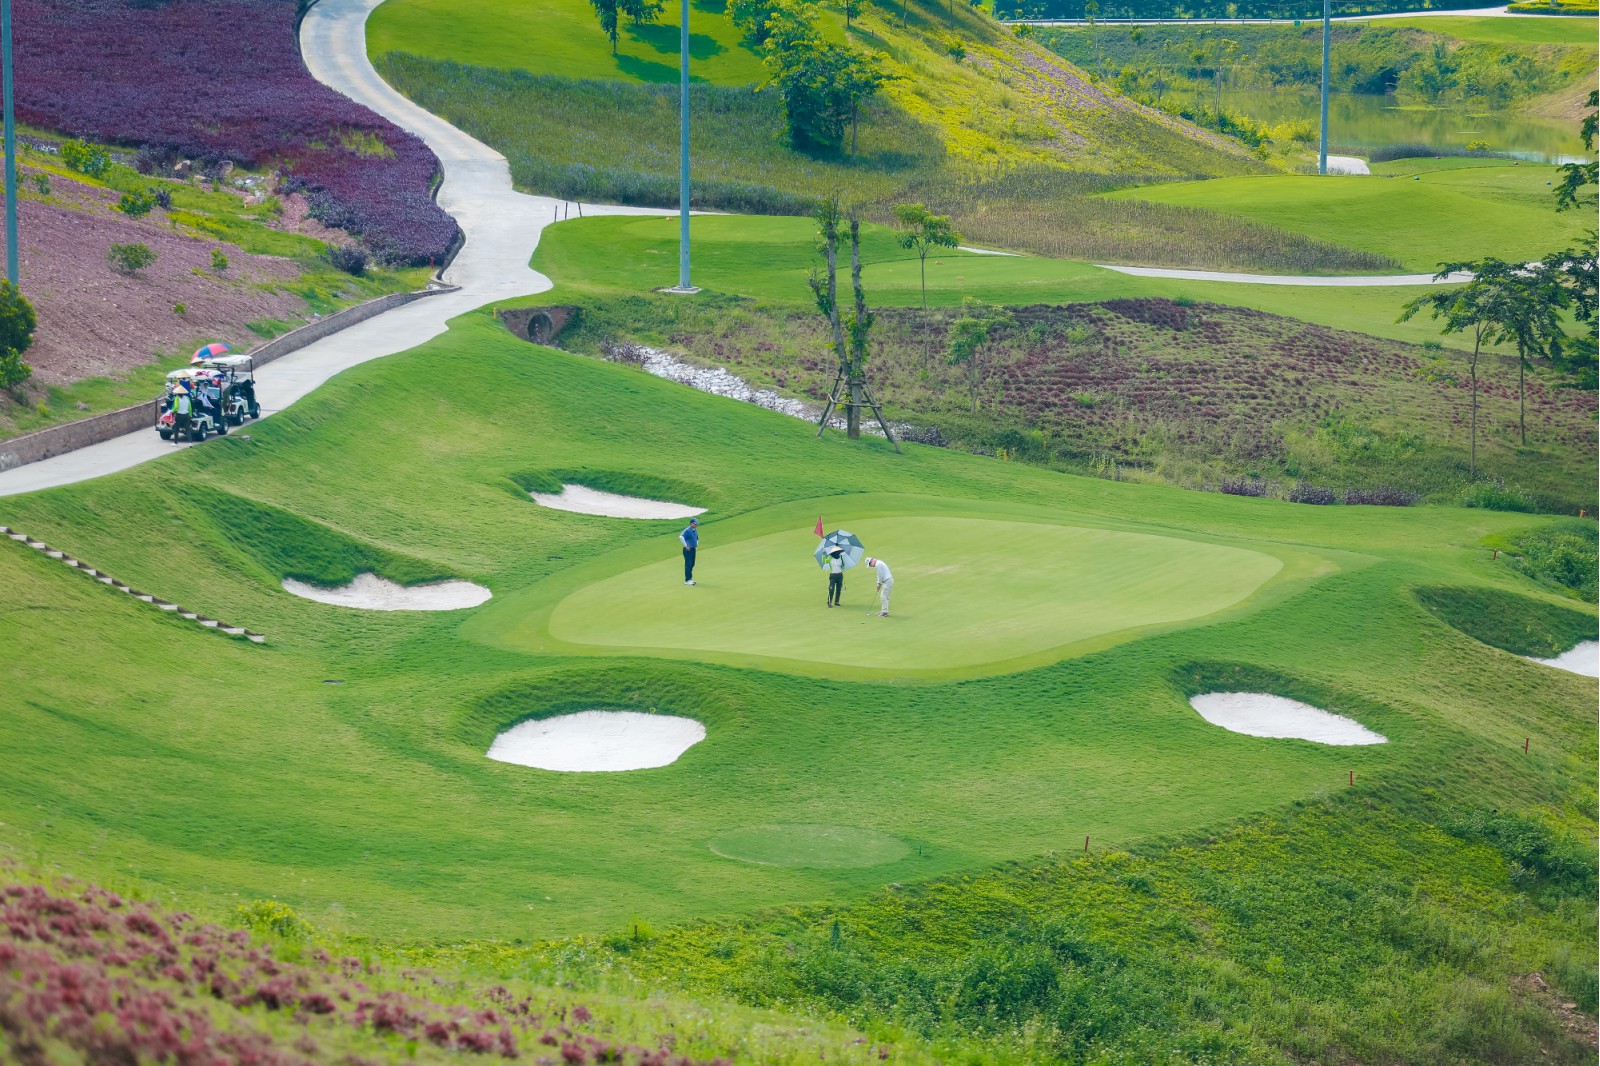 Giải VMC 2019 được tổ chức trên sân golf Yên Dũng, sân golf thách thức nhất Việt Nam, hứa hẹn đem đến những trận đấu kịch tính, đáng mong chờ